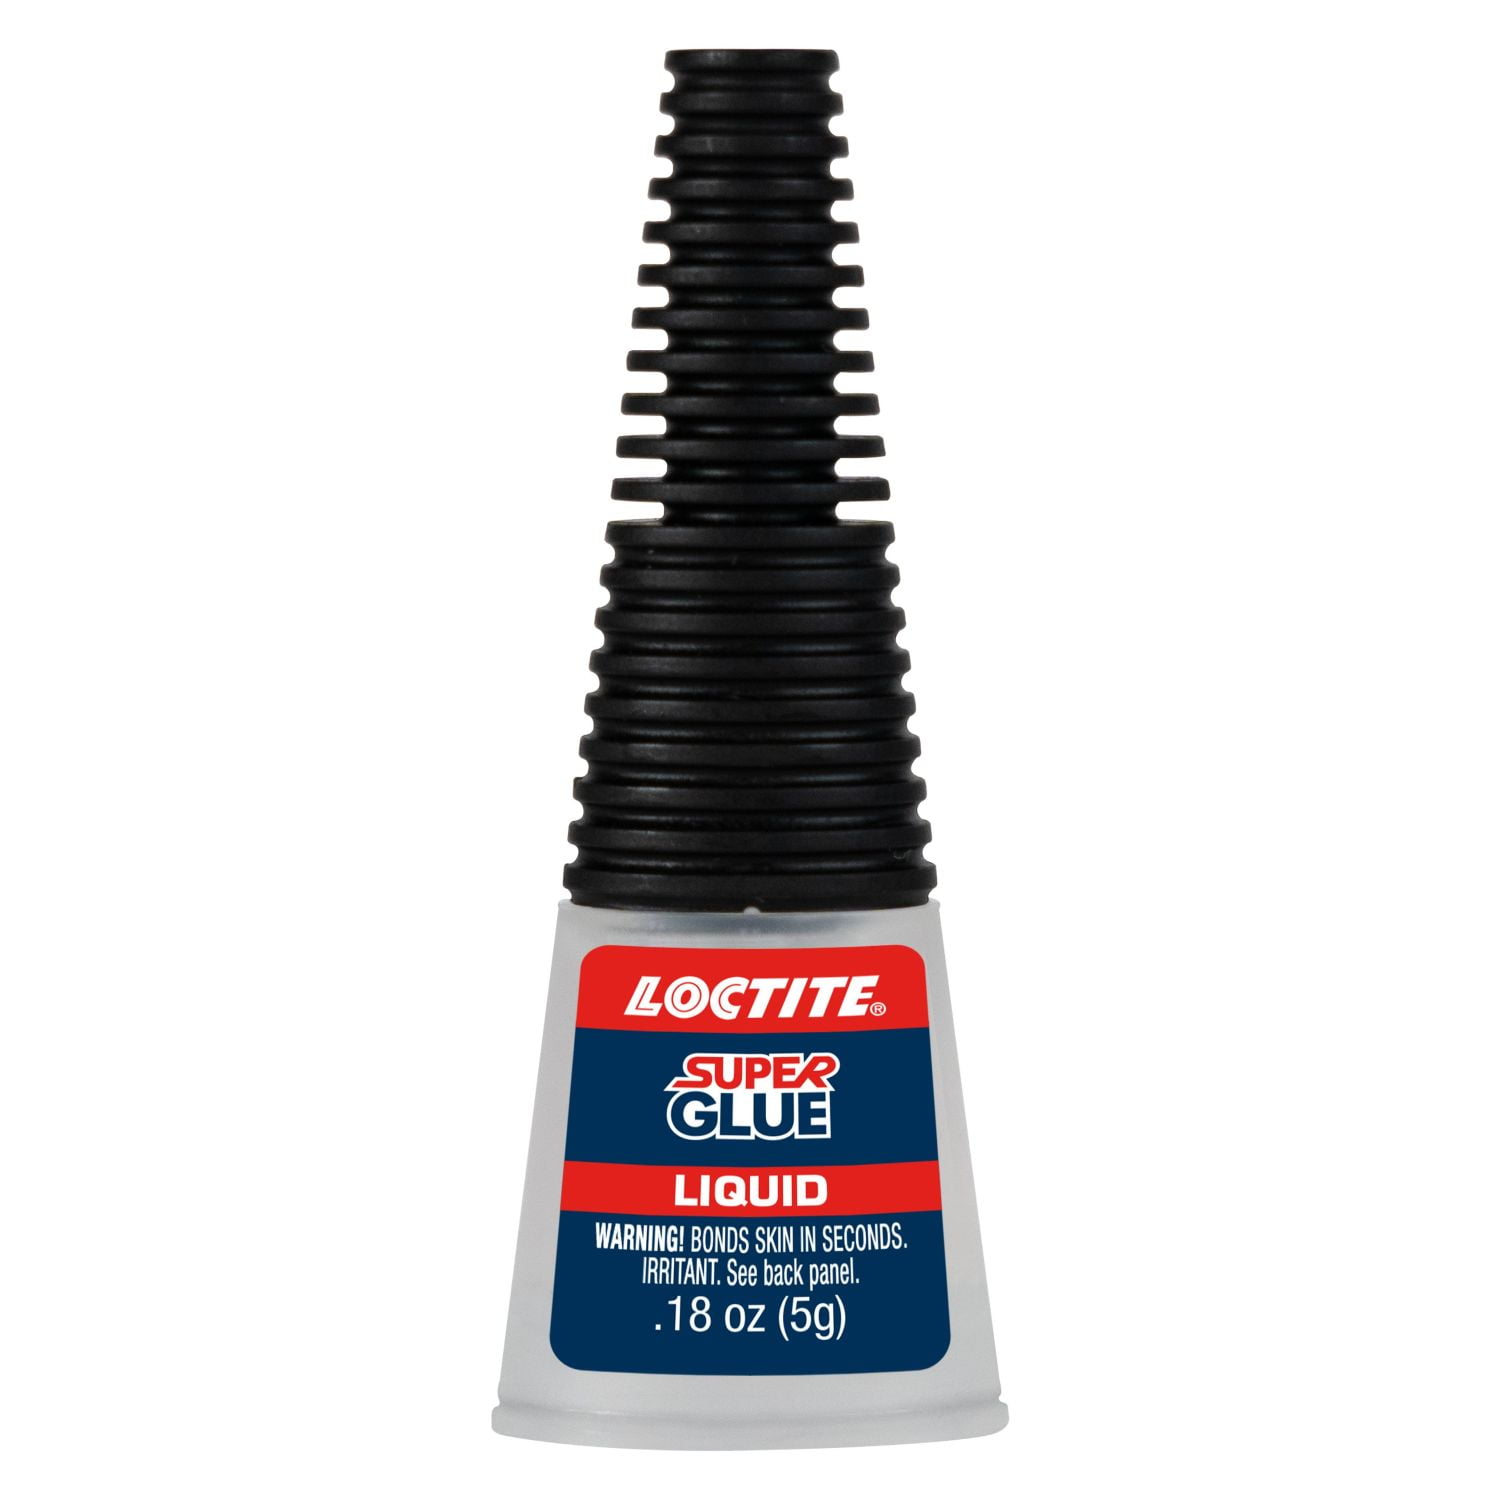 Loctite® Plastics-Bonding System Super Glue - 0.18 oz. at Menards®